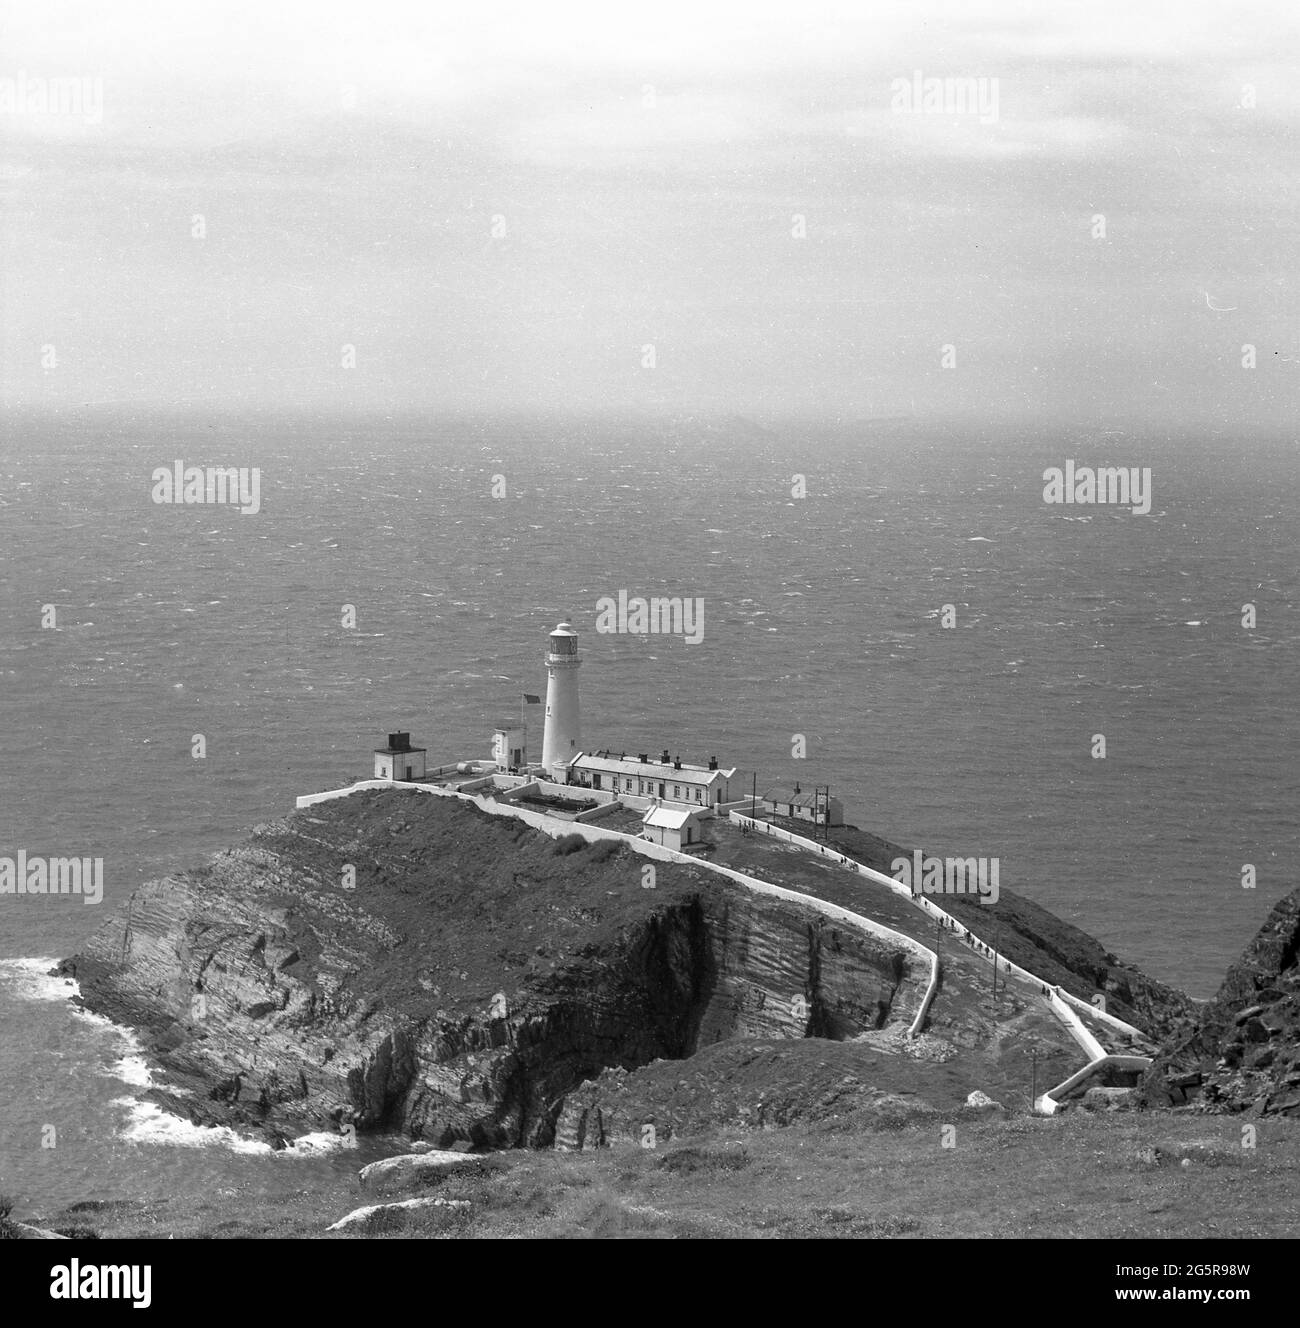 1966, vue aérienne historique sur le phare de South Stack et les bâtiments de soutien de Holy Island, Anglesey, pays de Galles, Royaume-Uni. Situé sur la roche périphérique sur une petite île au large de la côte nord-ouest de l'île Sainte, il a été construit en 1809 par Trinity House pour avertir les navires des roches dangereuses environnantes. Banque D'Images